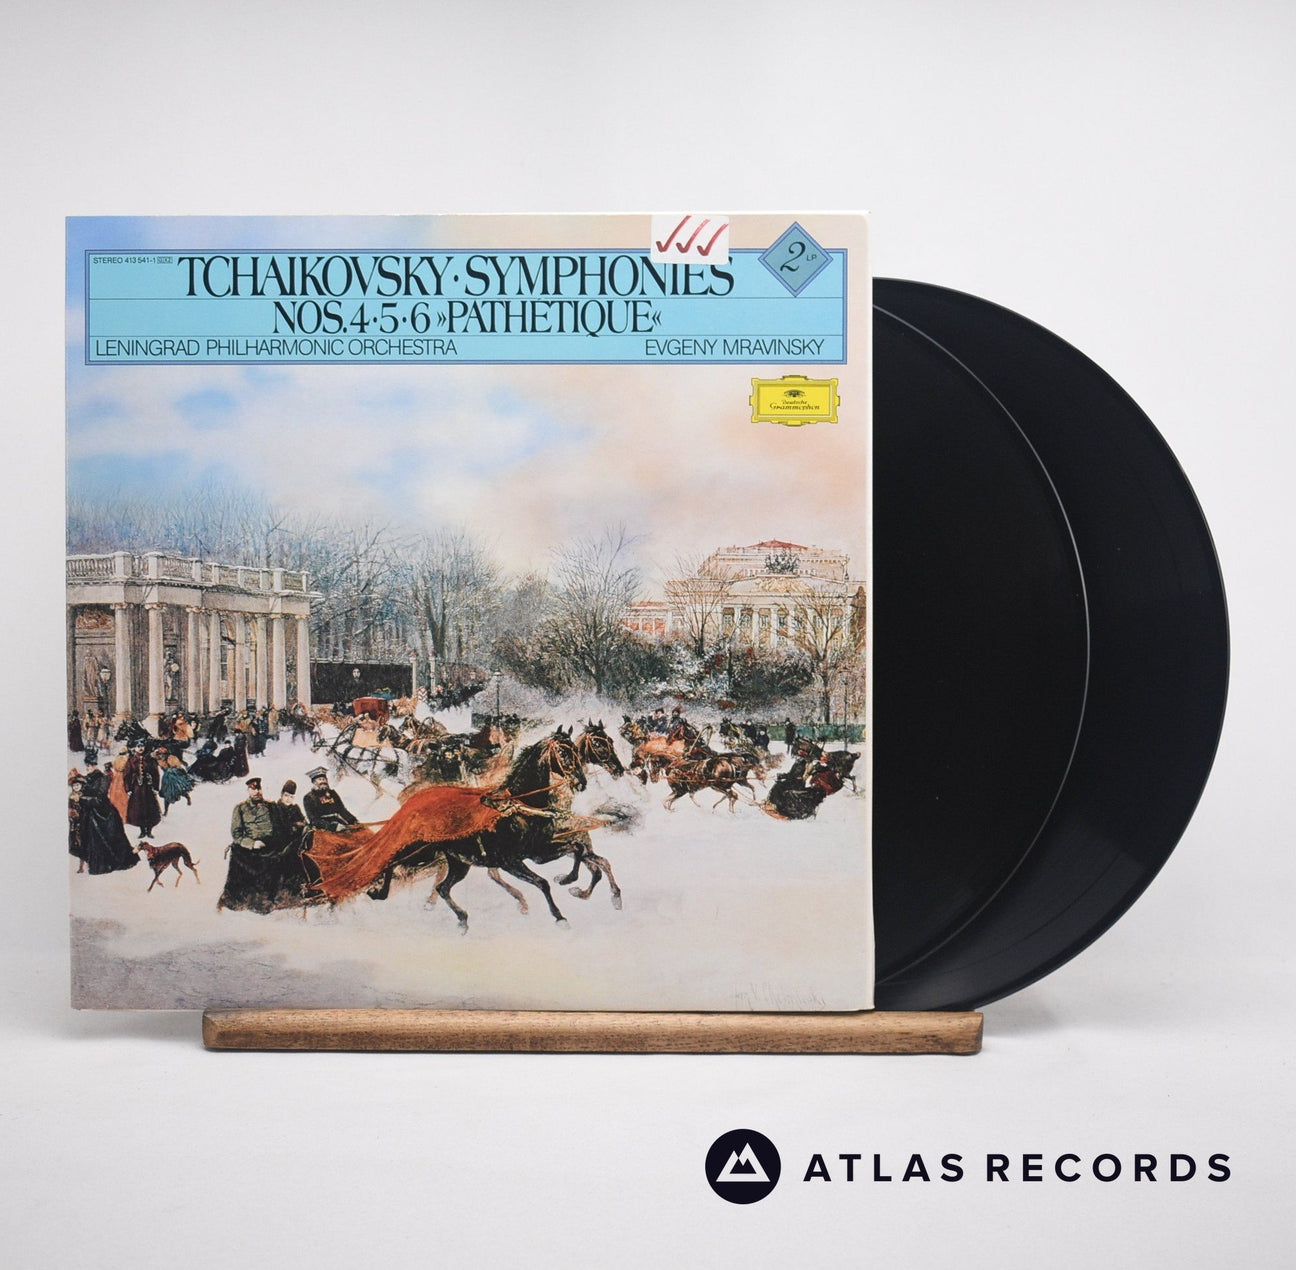 Pyotr Ilyich Tchaikovsky Symphonies Nos. 4•5•6 »Pathetique« Double LP Vinyl Record - Front Cover & Record